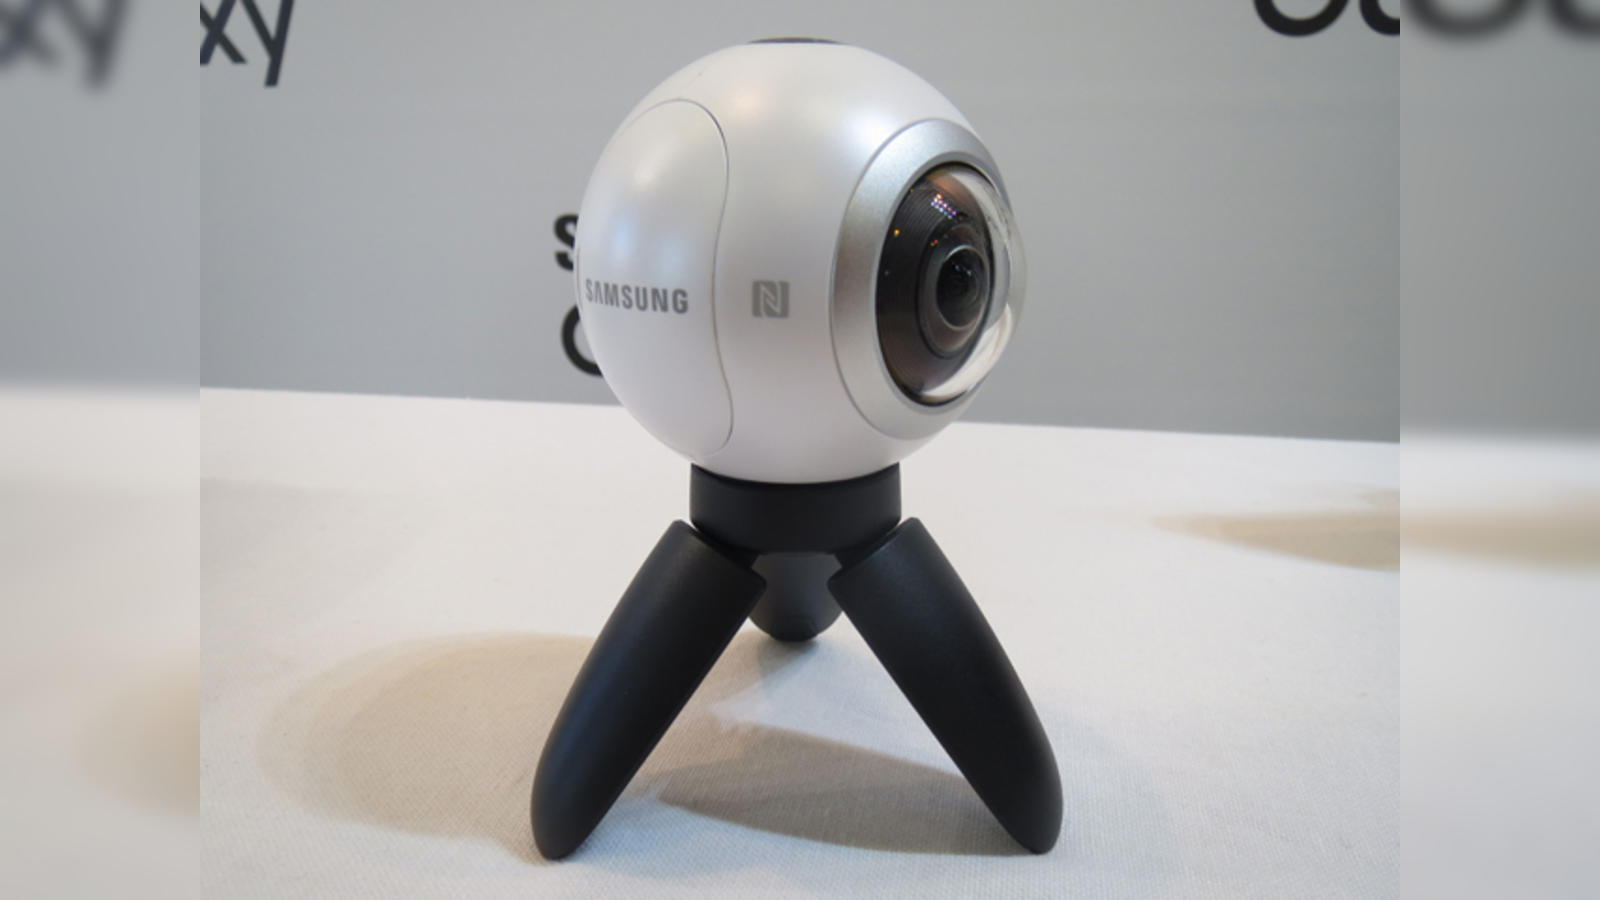  Samsung Gear 360 Real 360° High Resolution VR Camera